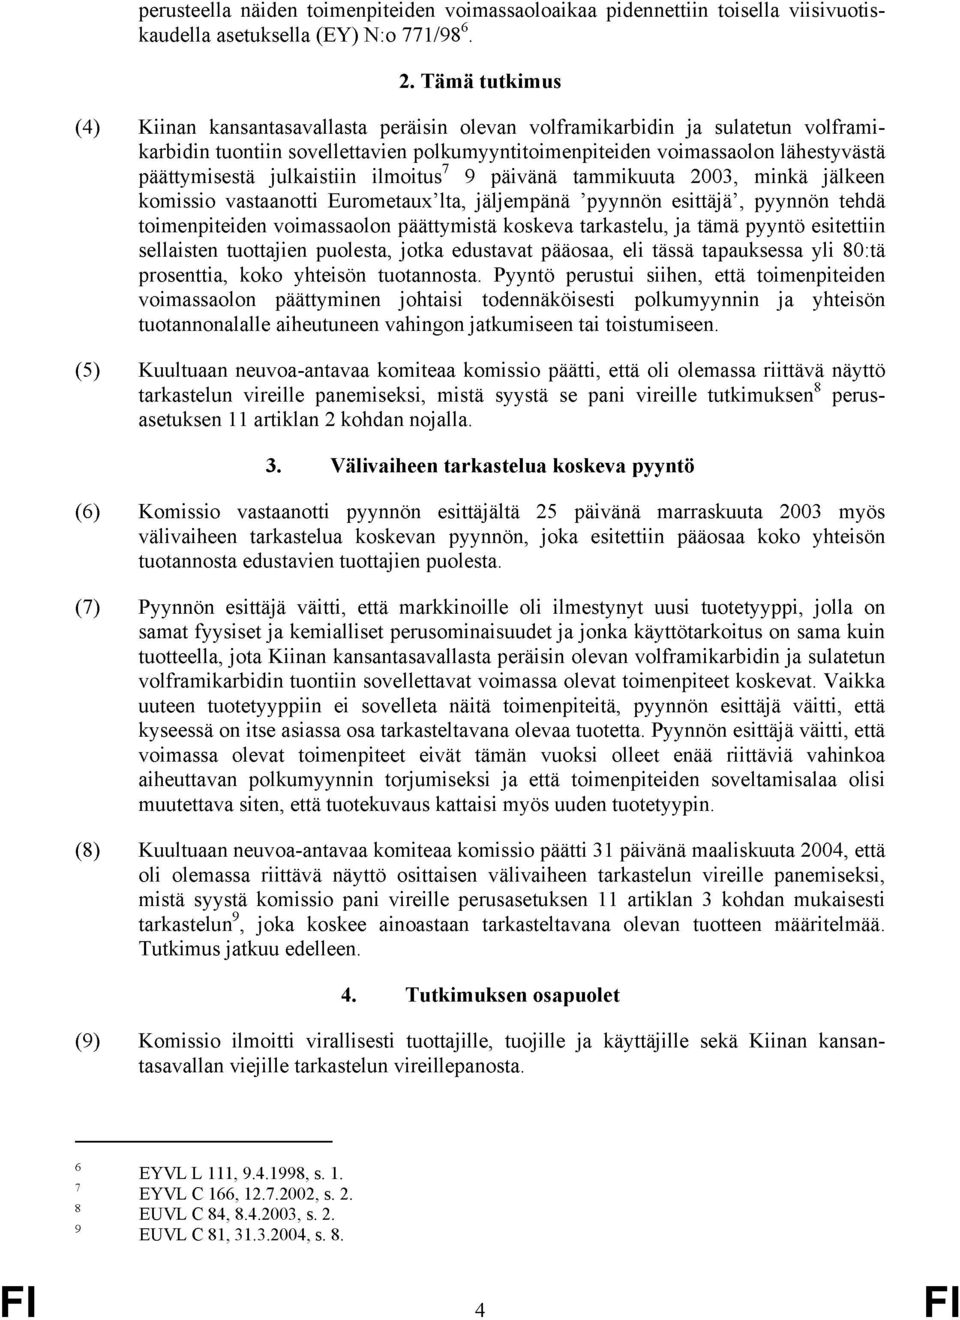 päättymisestä julkaistiin ilmoitus 7 9 päivänä tammikuuta 2003, minkä jälkeen komissio vastaanotti Eurometaux lta, jäljempänä pyynnön esittäjä, pyynnön tehdä toimenpiteiden voimassaolon päättymistä